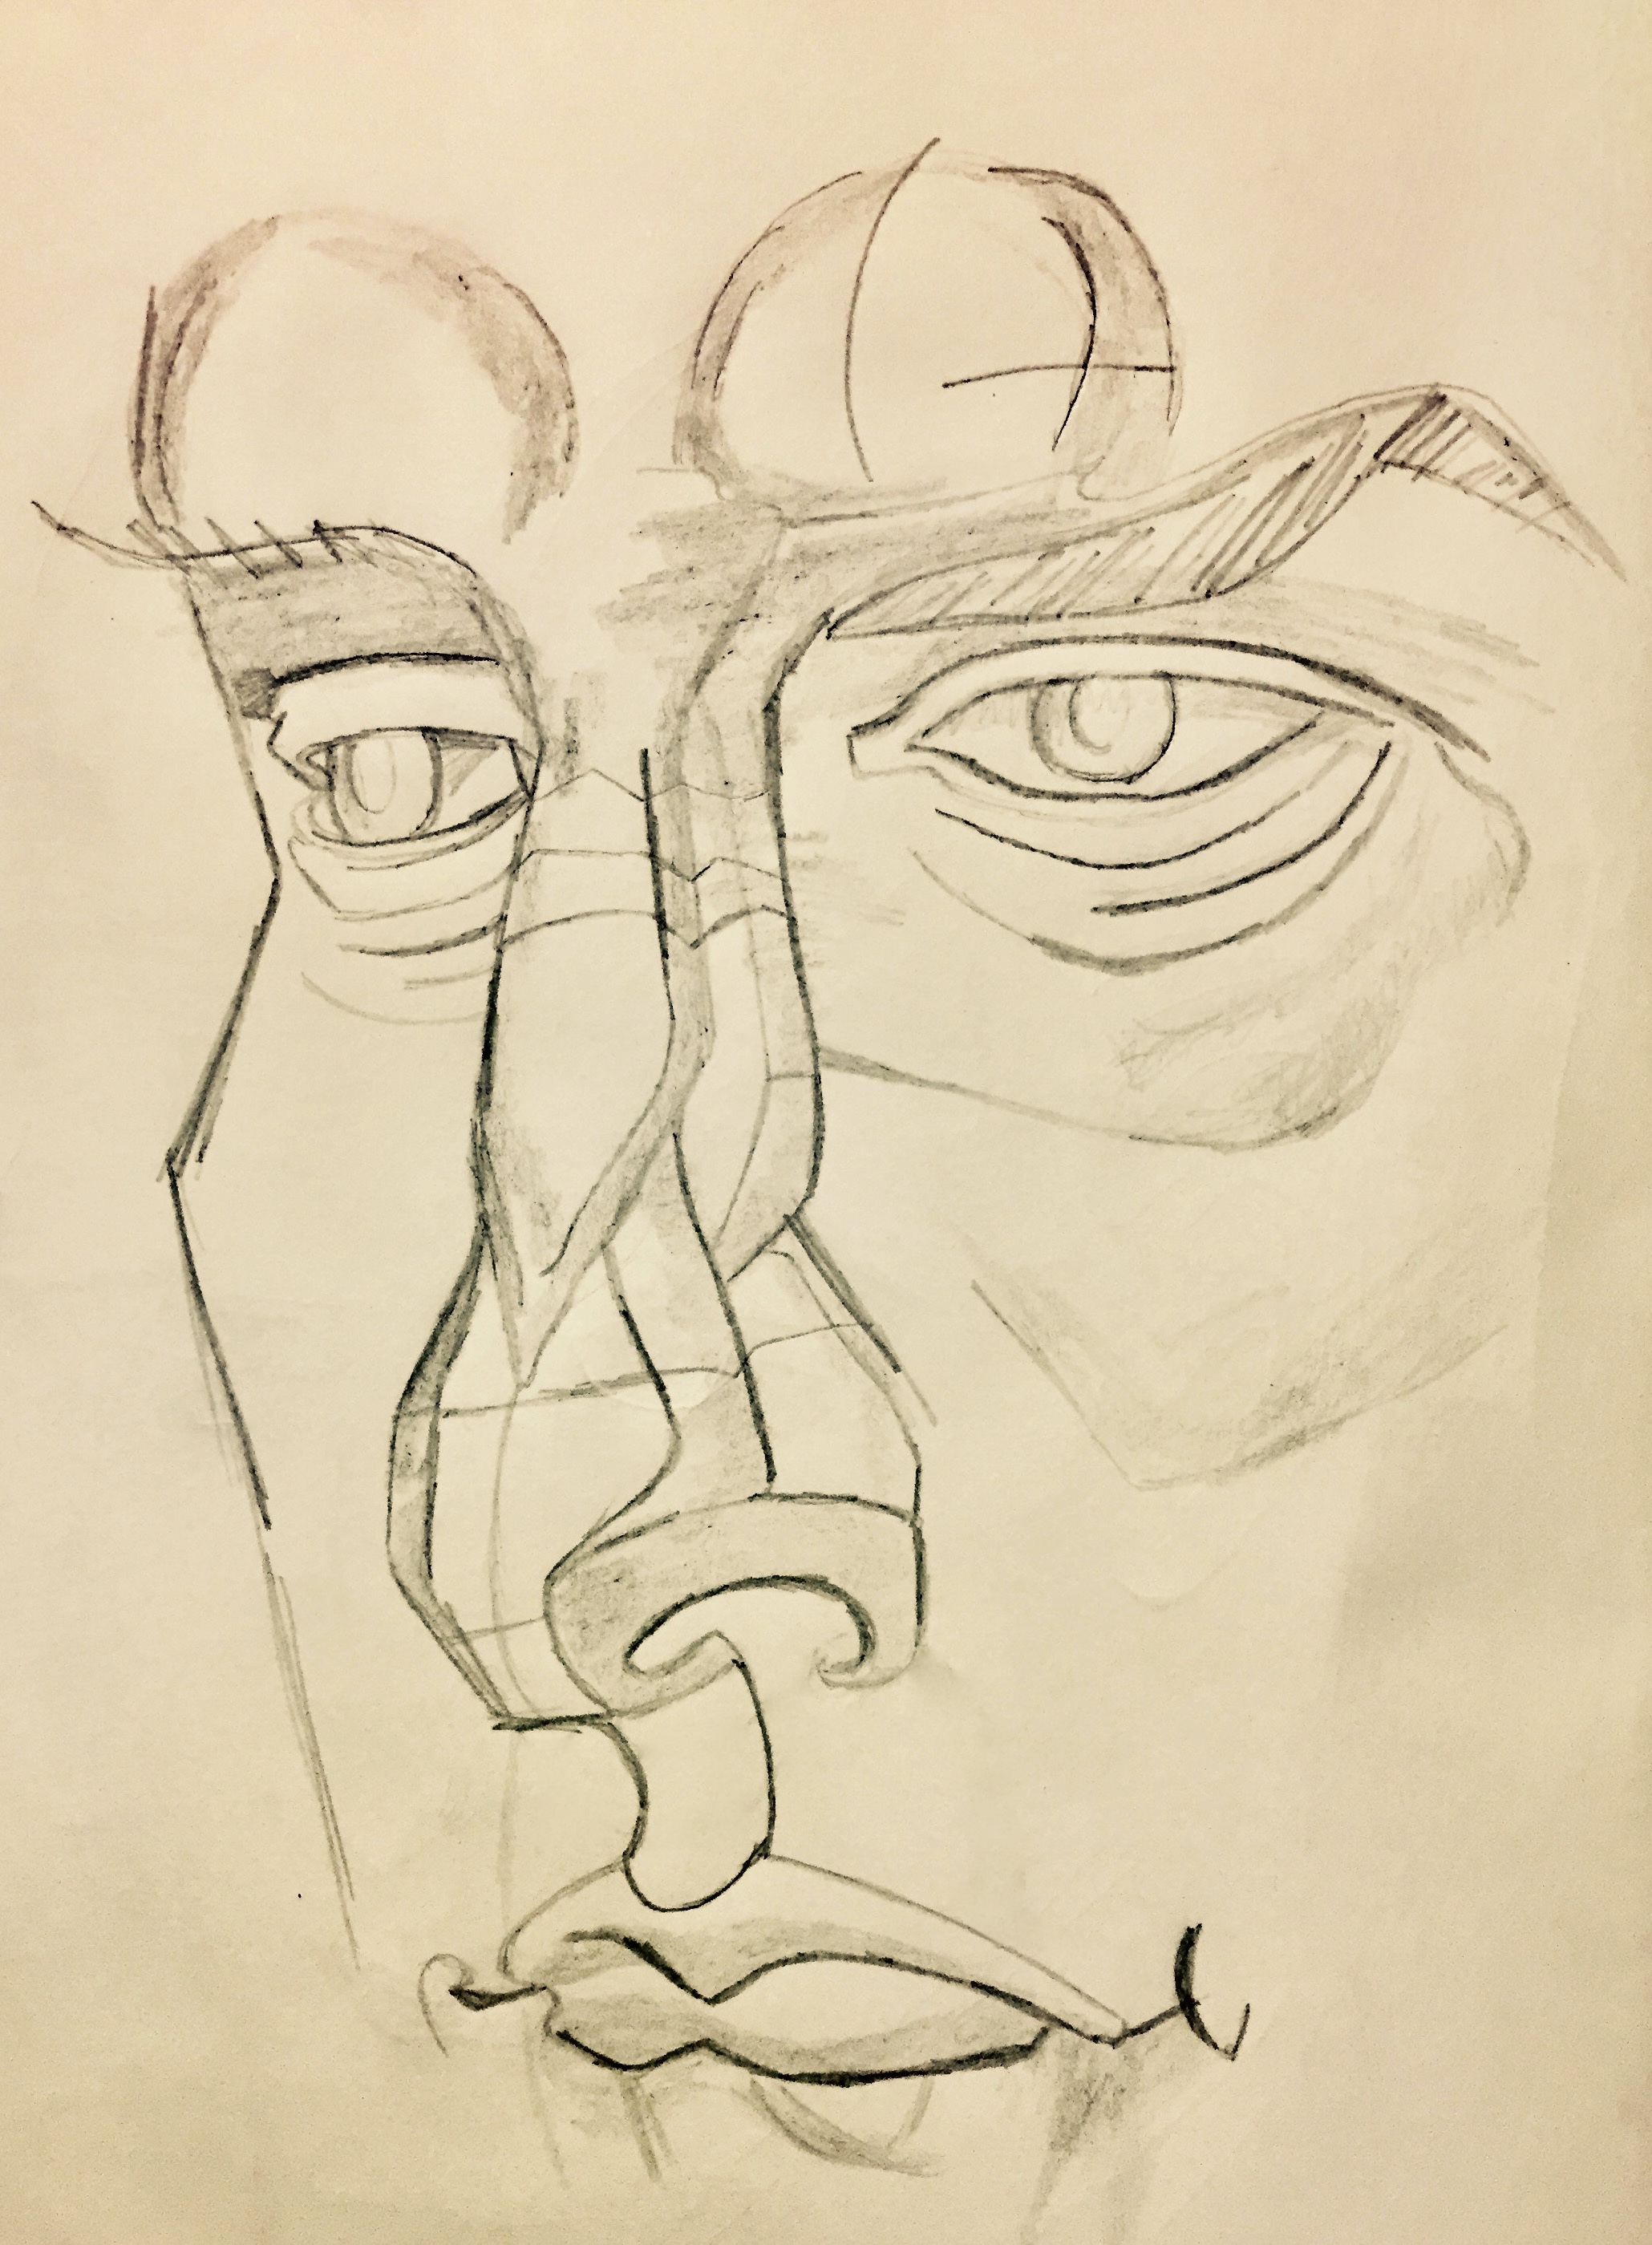 Drawing and Imaging: Sketchbook Anatomy Studies/Heads